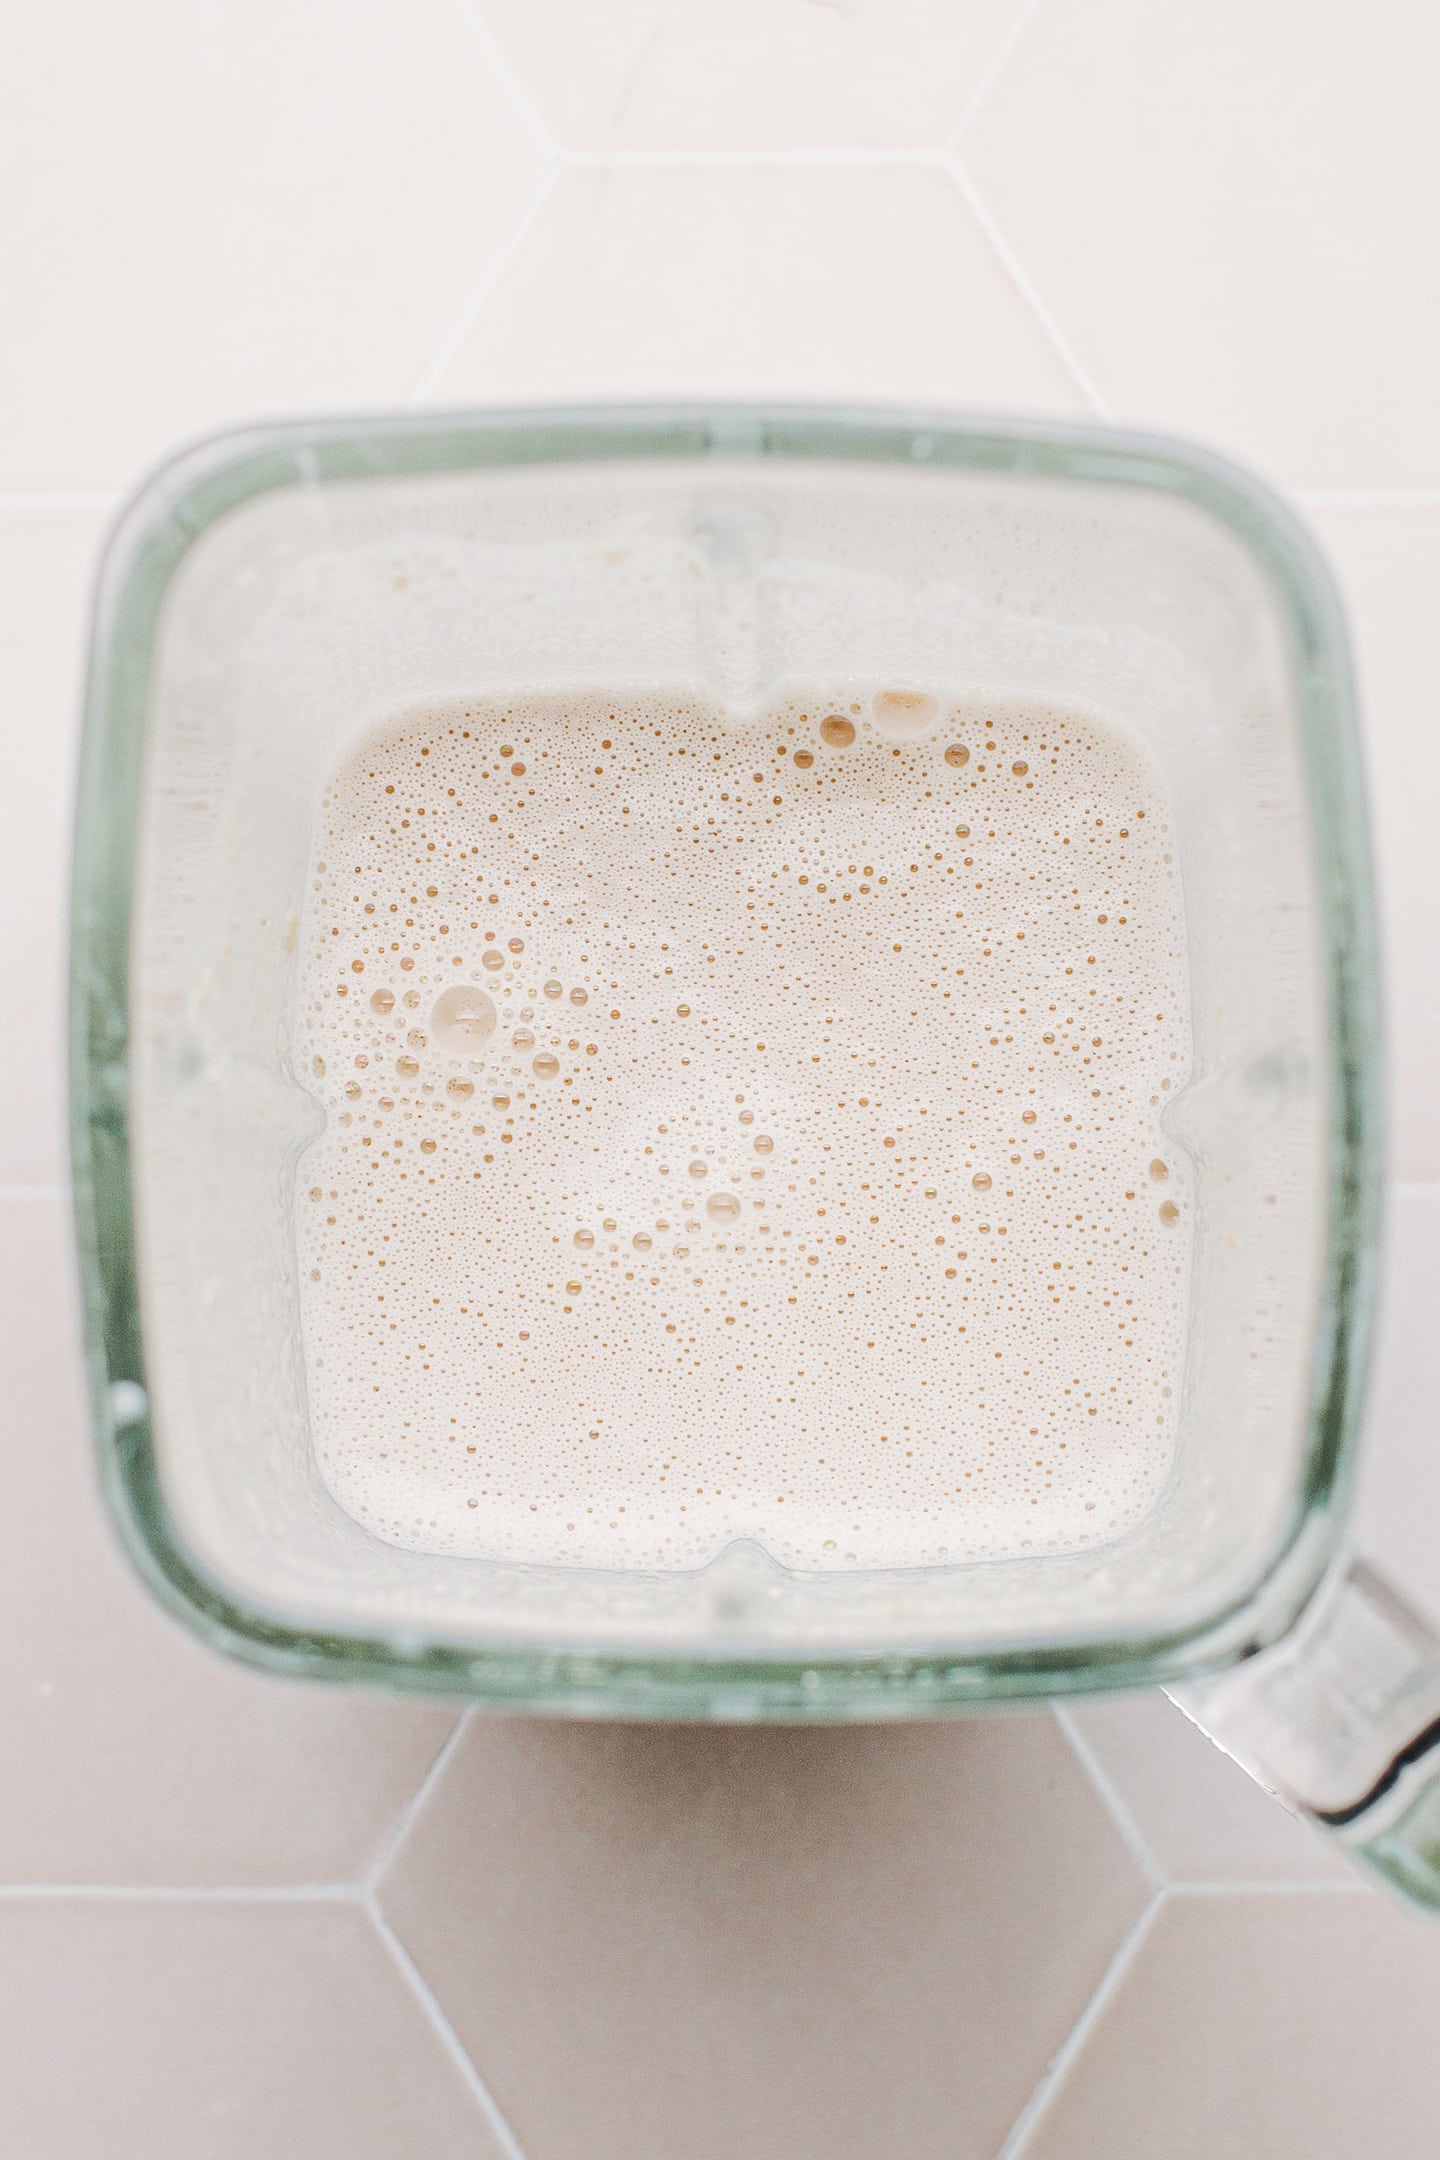 Cashew cream in a blender.